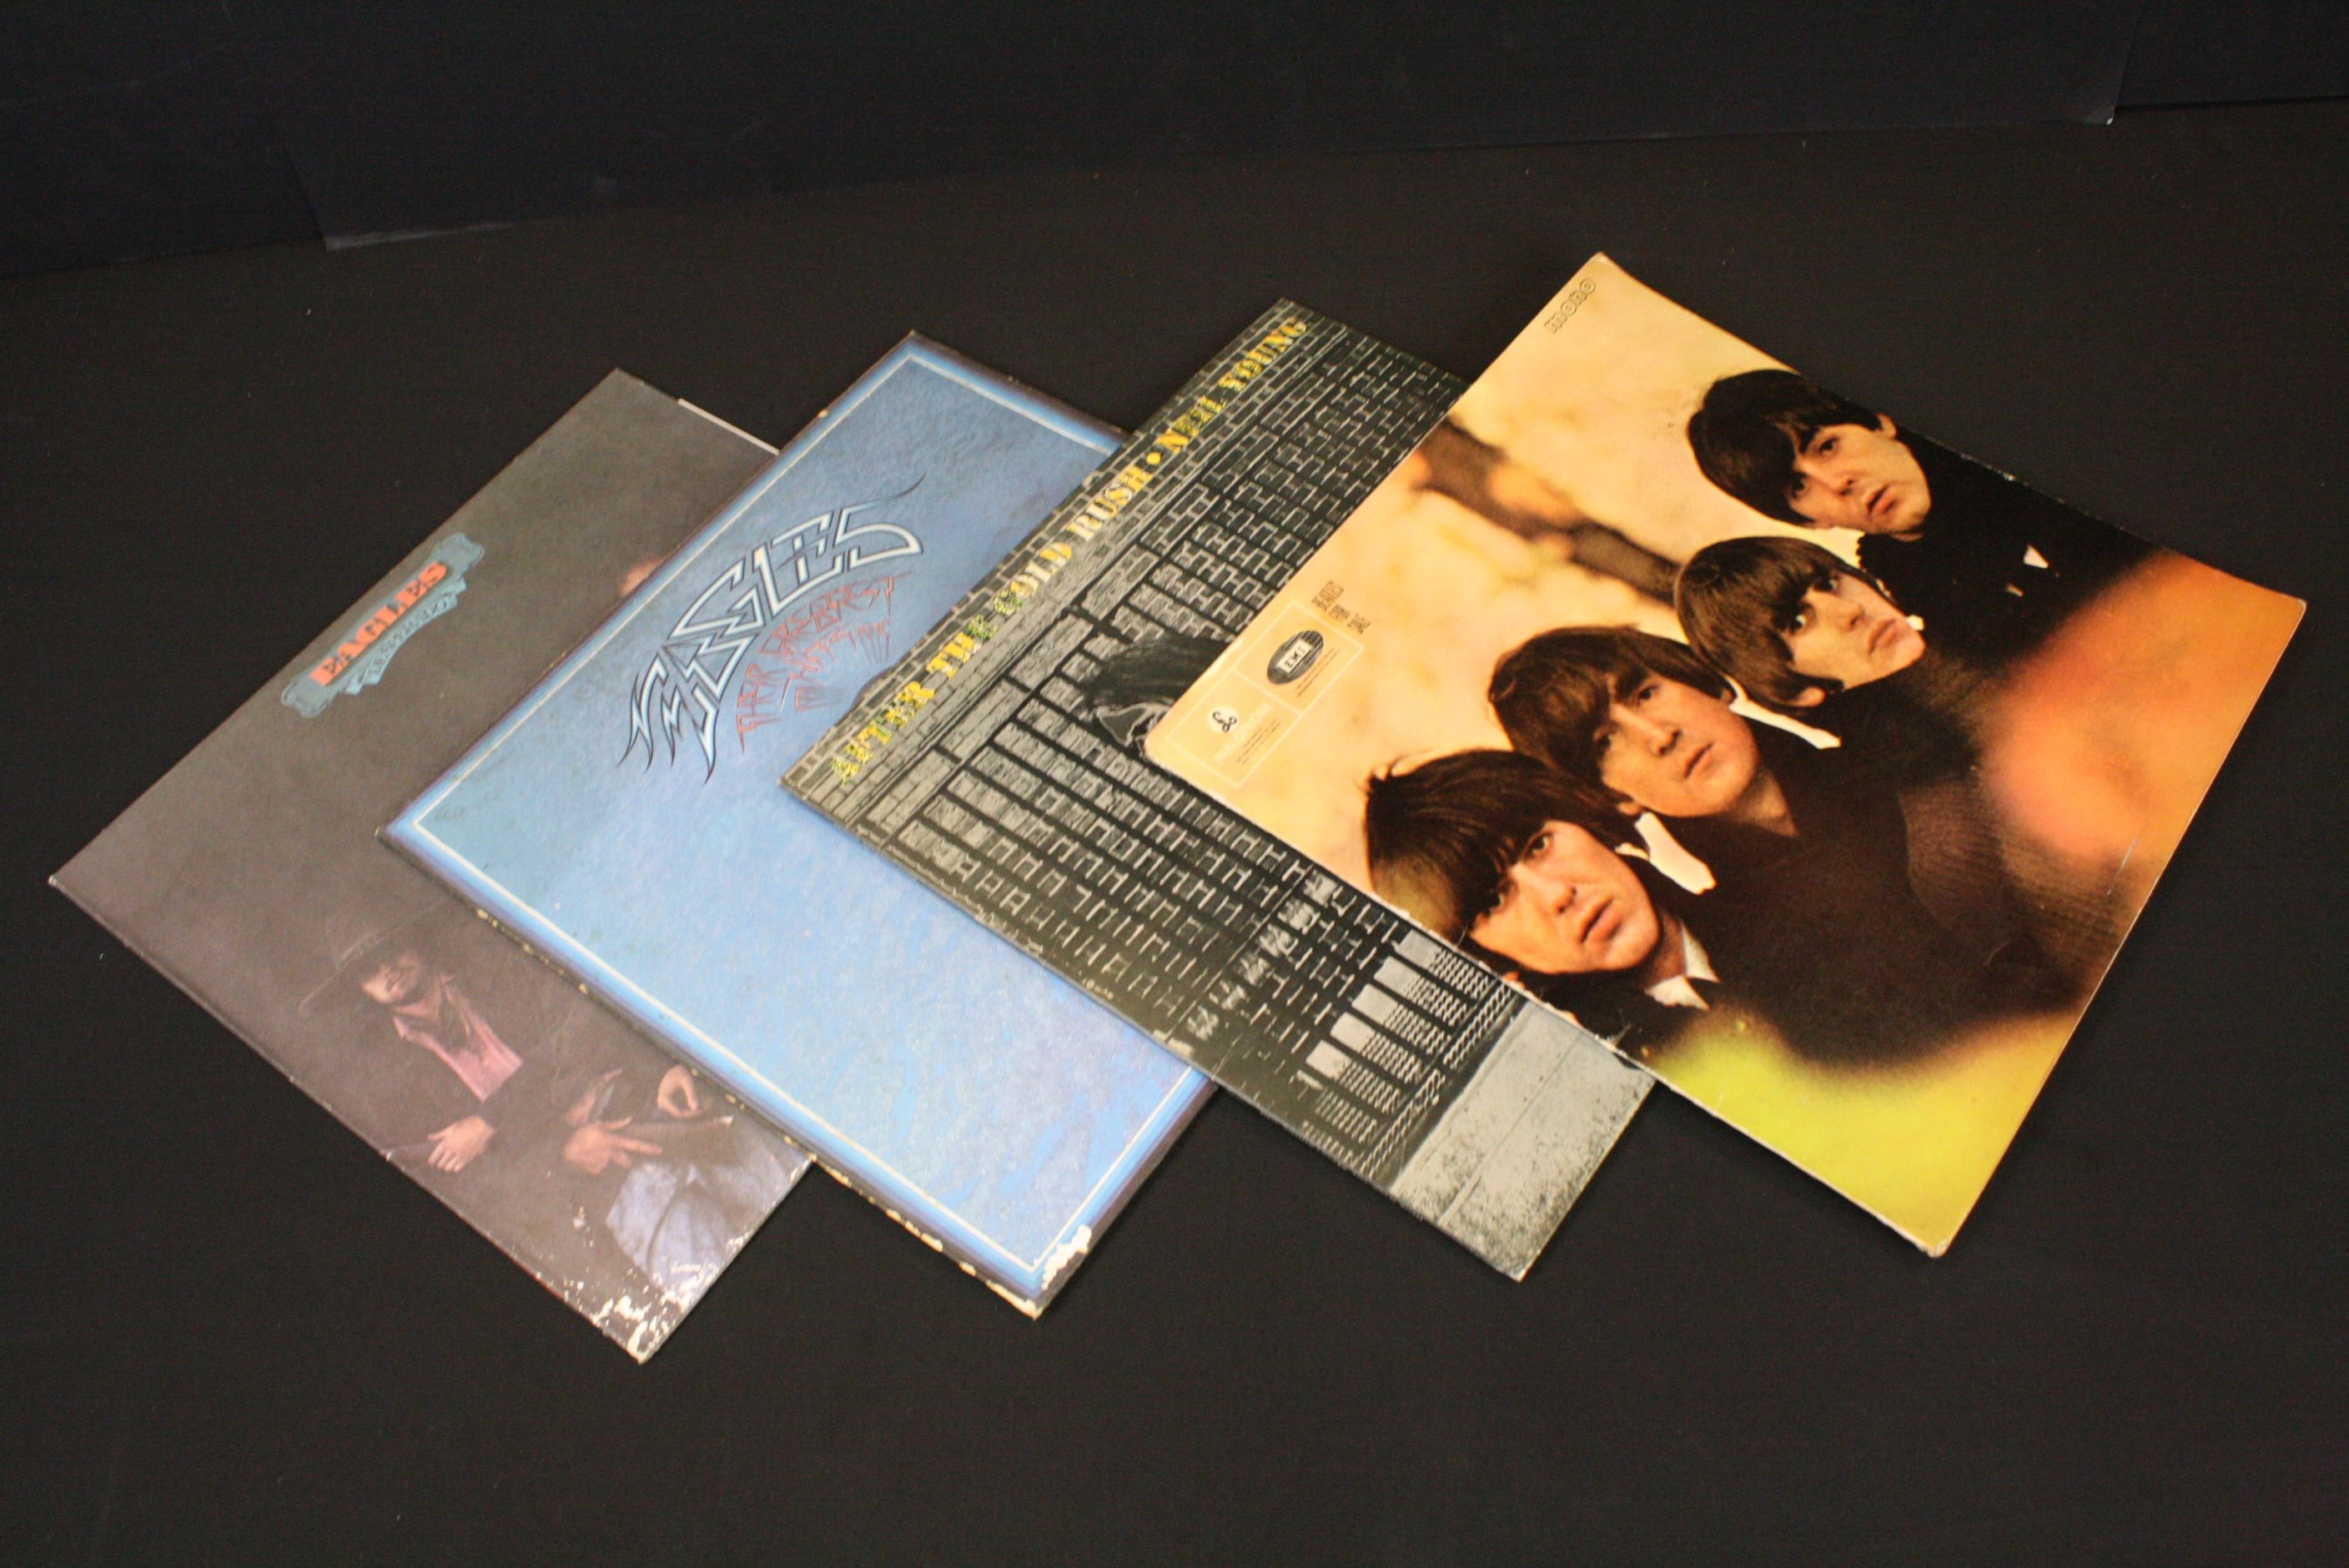 Vinyl - Over 30 Rock & Pop LPs & 12" singles to include Fleetwood Mac, Led Zeppelin, The Beatles, - Image 3 of 7